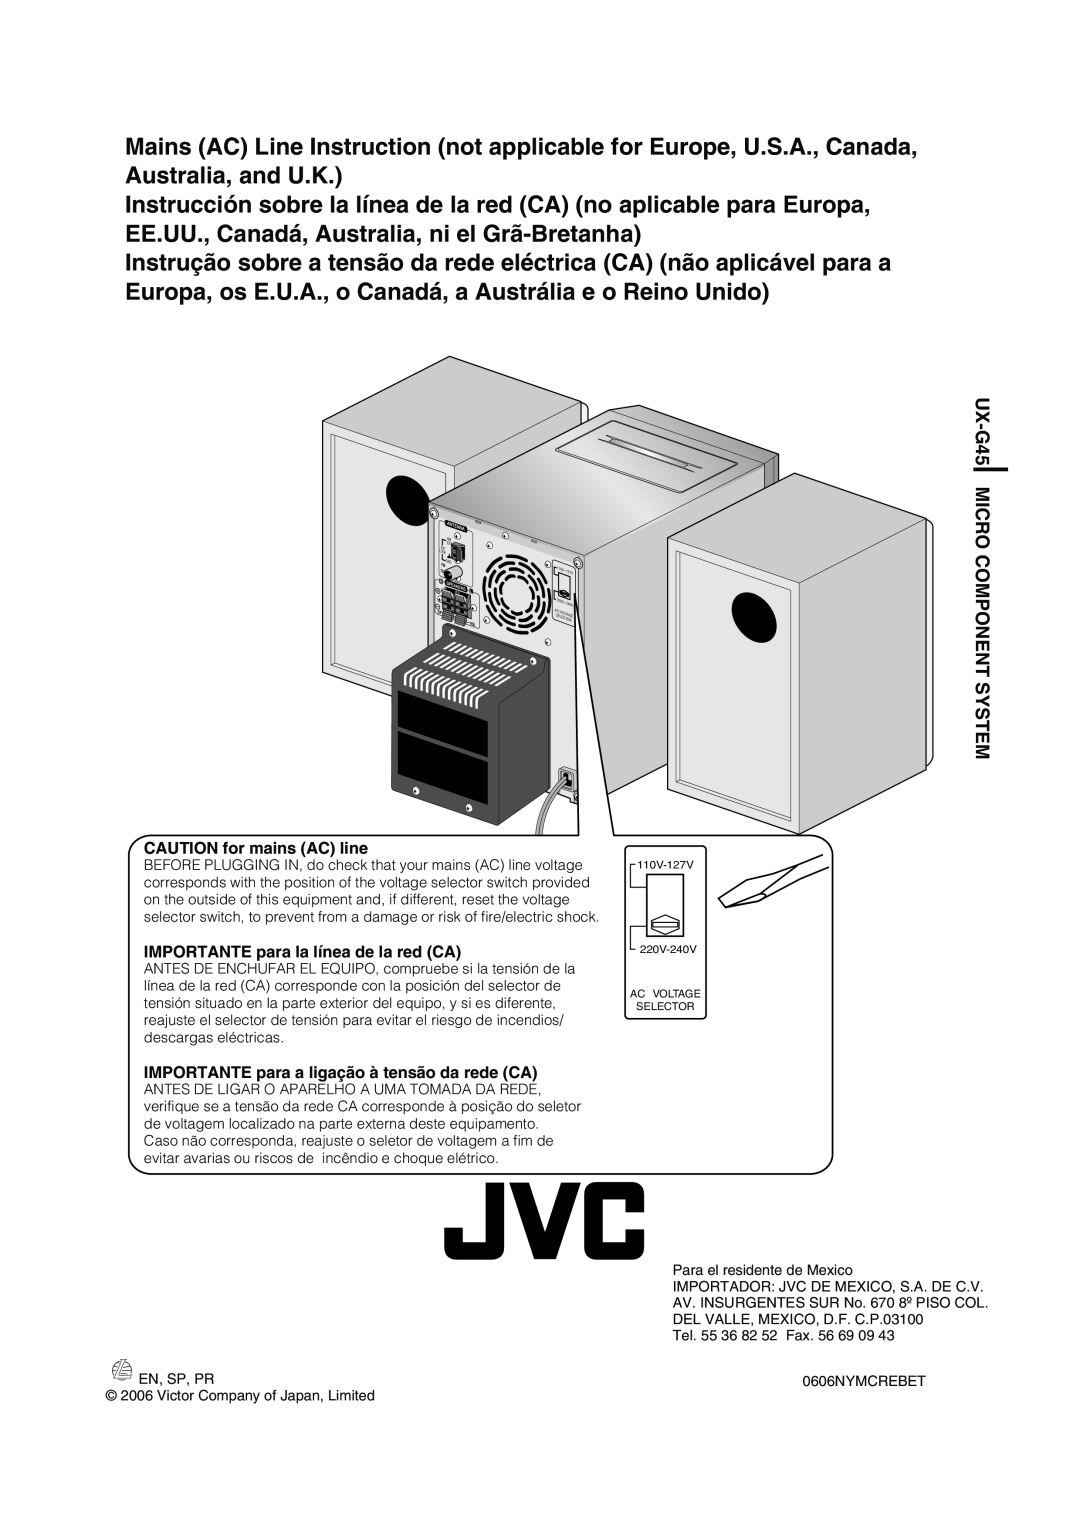 JVC CA-UXG45, LVT1520-005B, SP-UXG45 manual CAUTION for mains AC line, IMPORTANTE para la línea de la red CA 